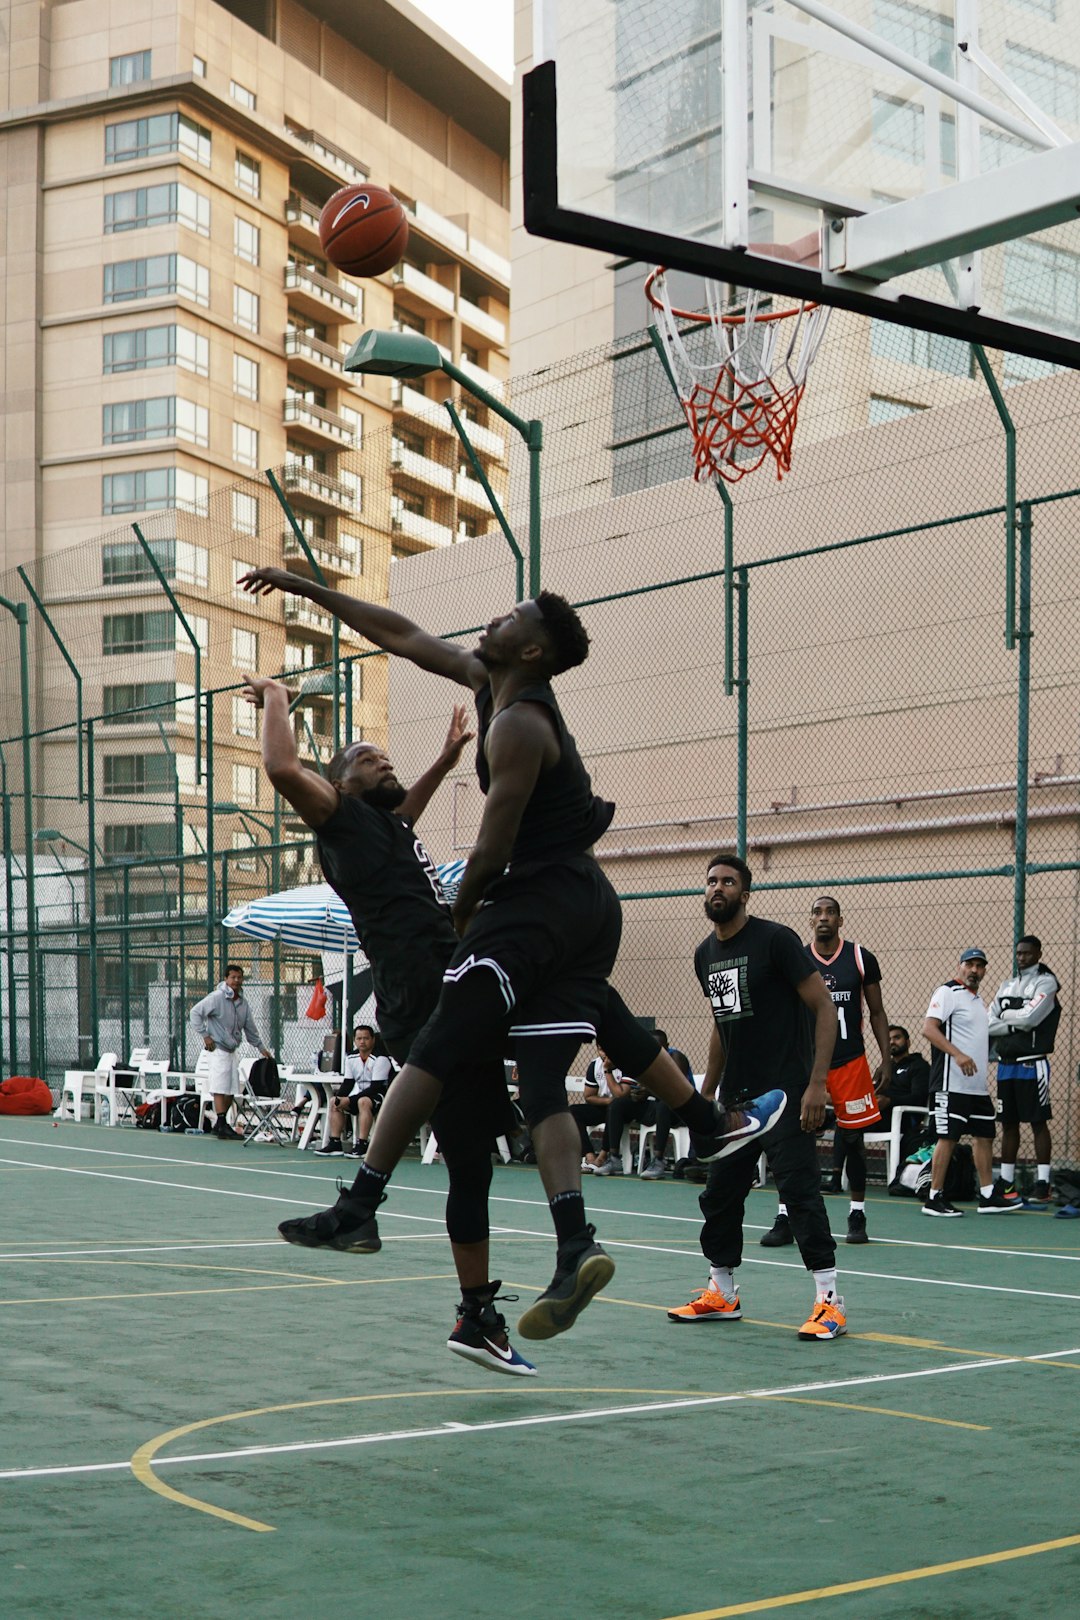 man in black jersey shirt playing basketball